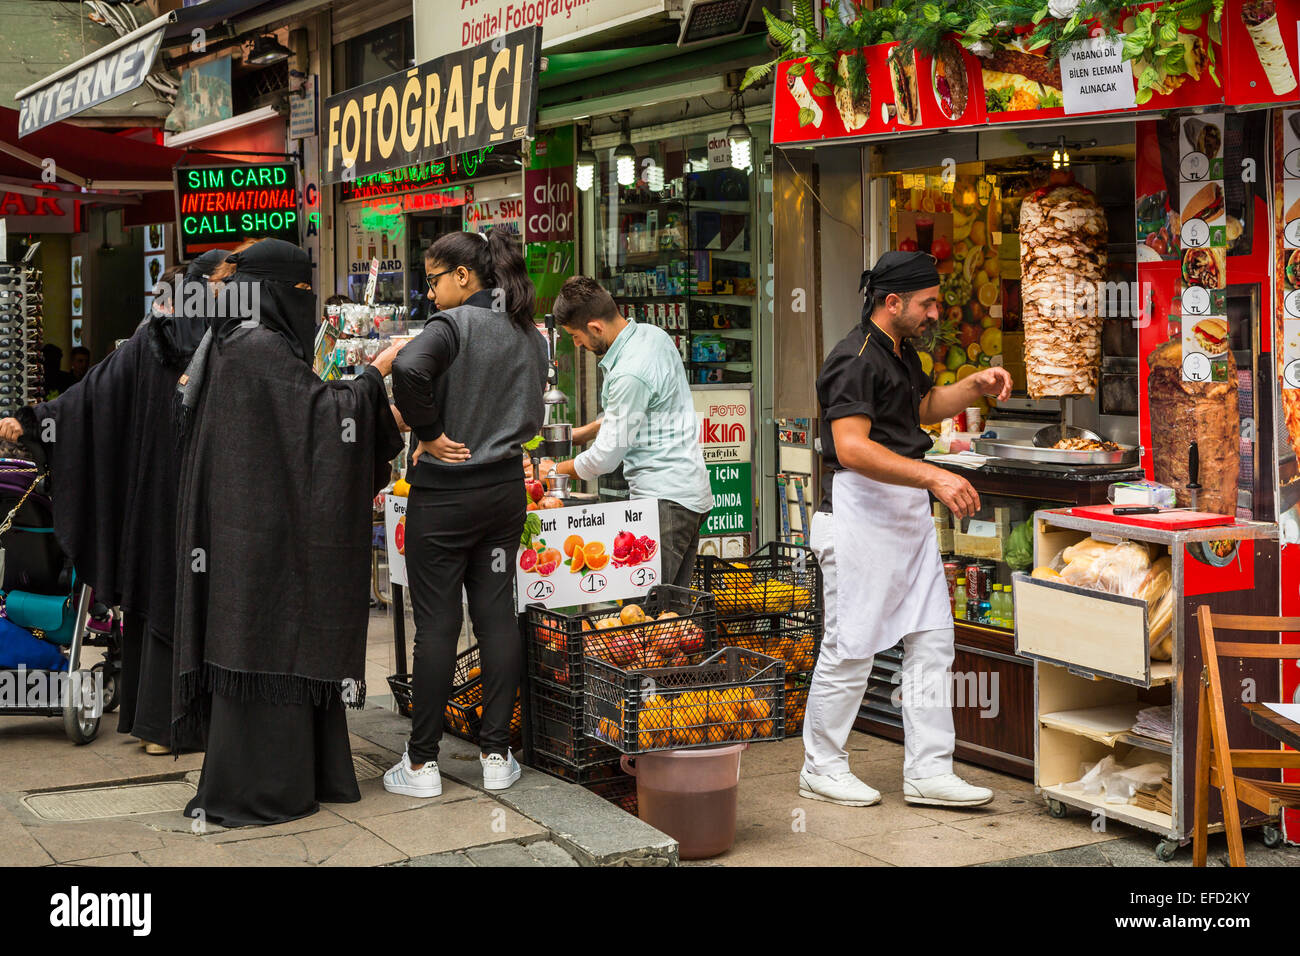 Ein kleines Restaurant im Freien Straße Verkauf von Fast-Food Döner in Sultanahmet, Istanbul, Türkei, Eurasien. Stockfoto